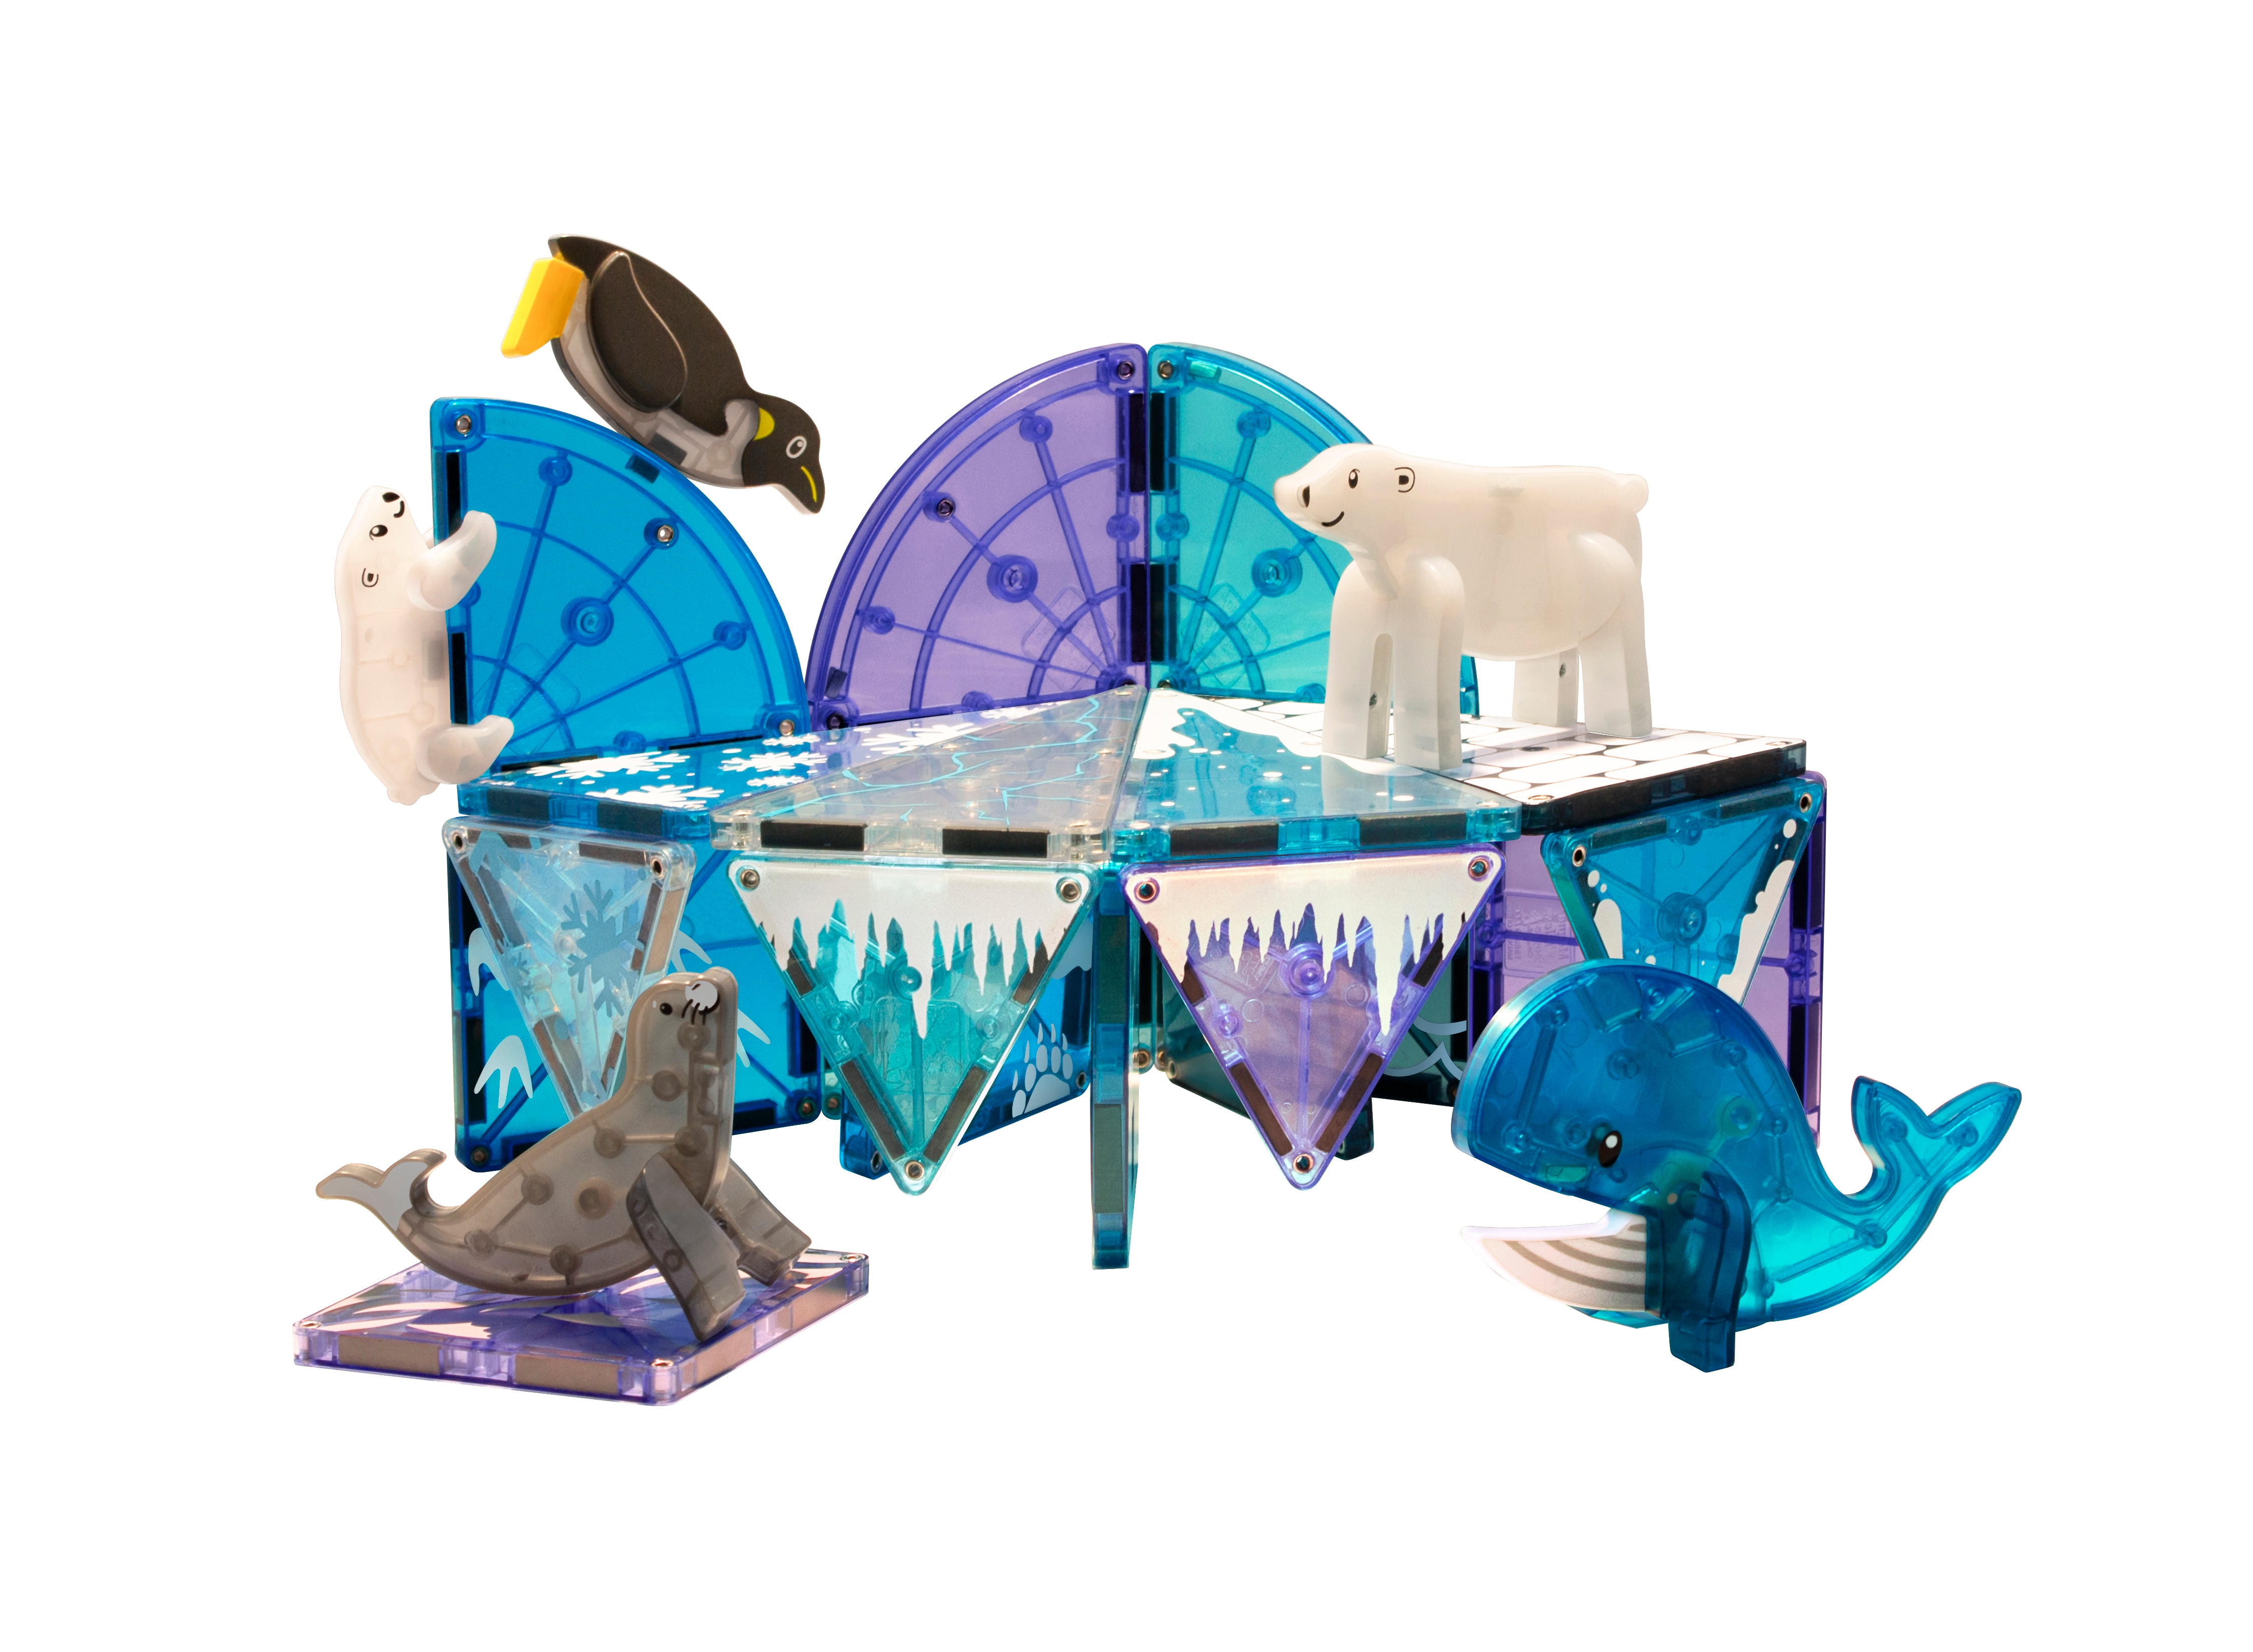 Magna-Tiles Arctic Animals 25-Piece Set